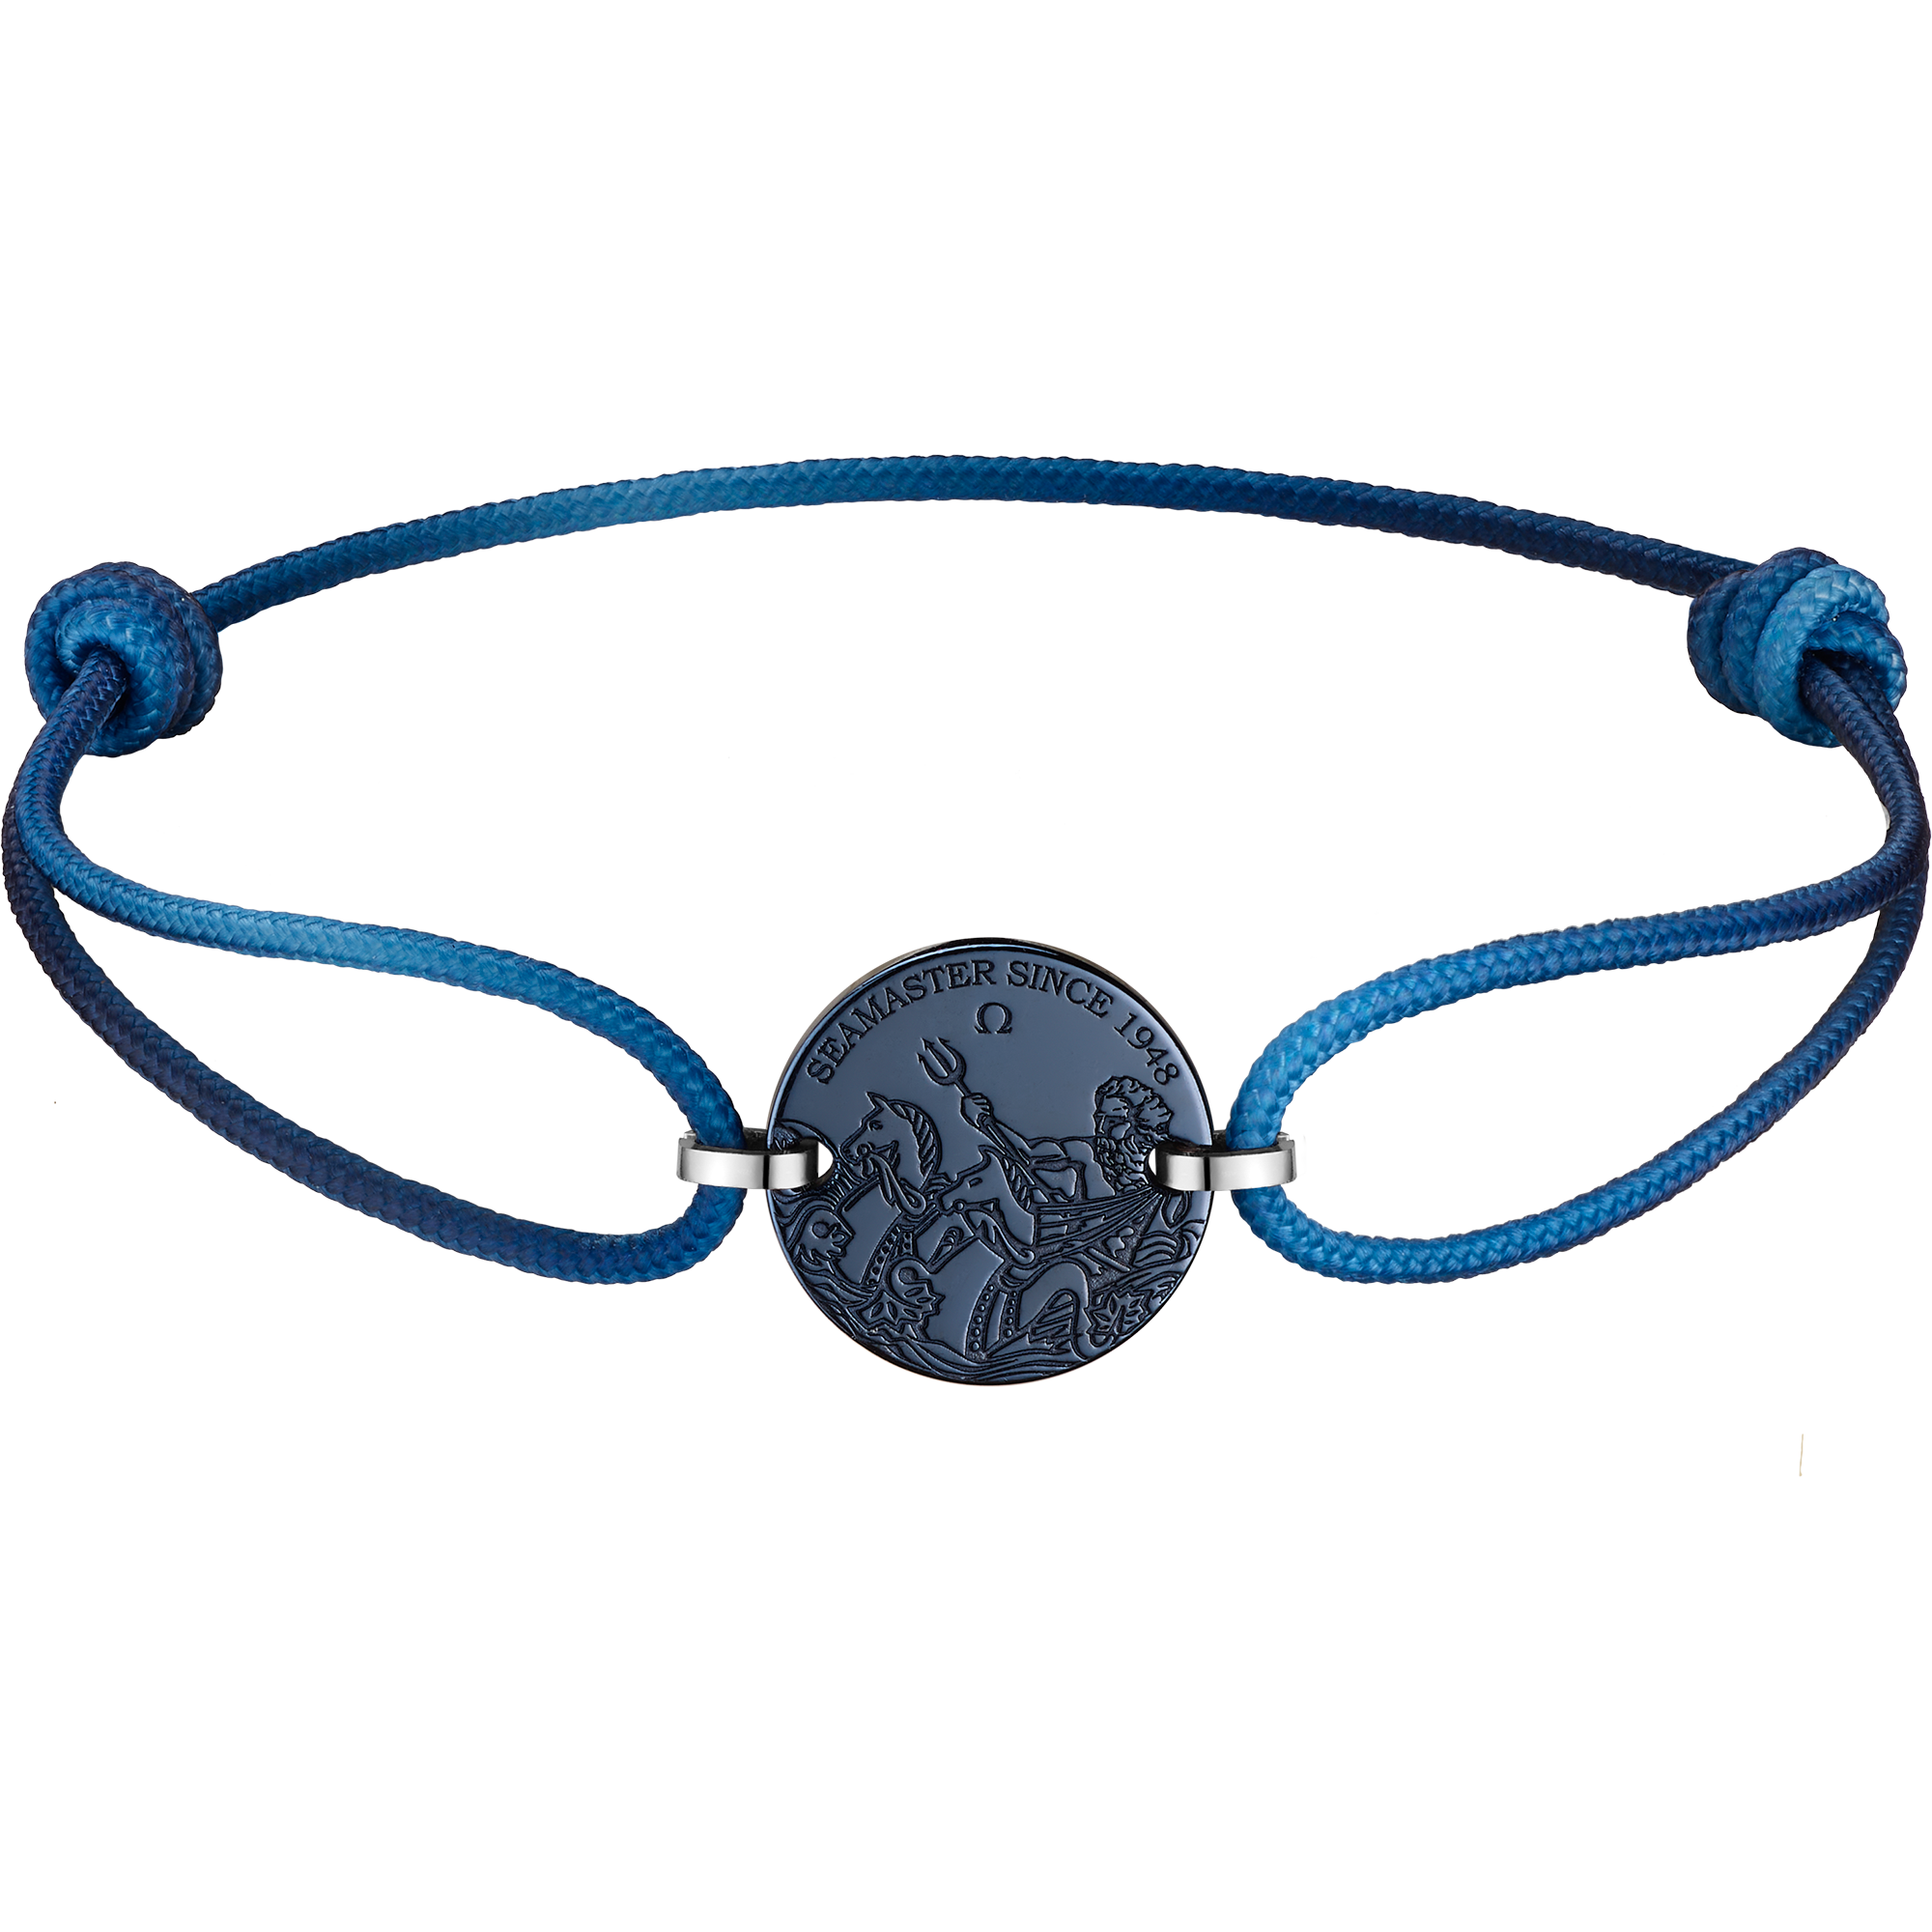 Seamaster Armband, Blaue Kordel, Edelstahl mit blauer CVD-Beschichtung - B607ST0000105